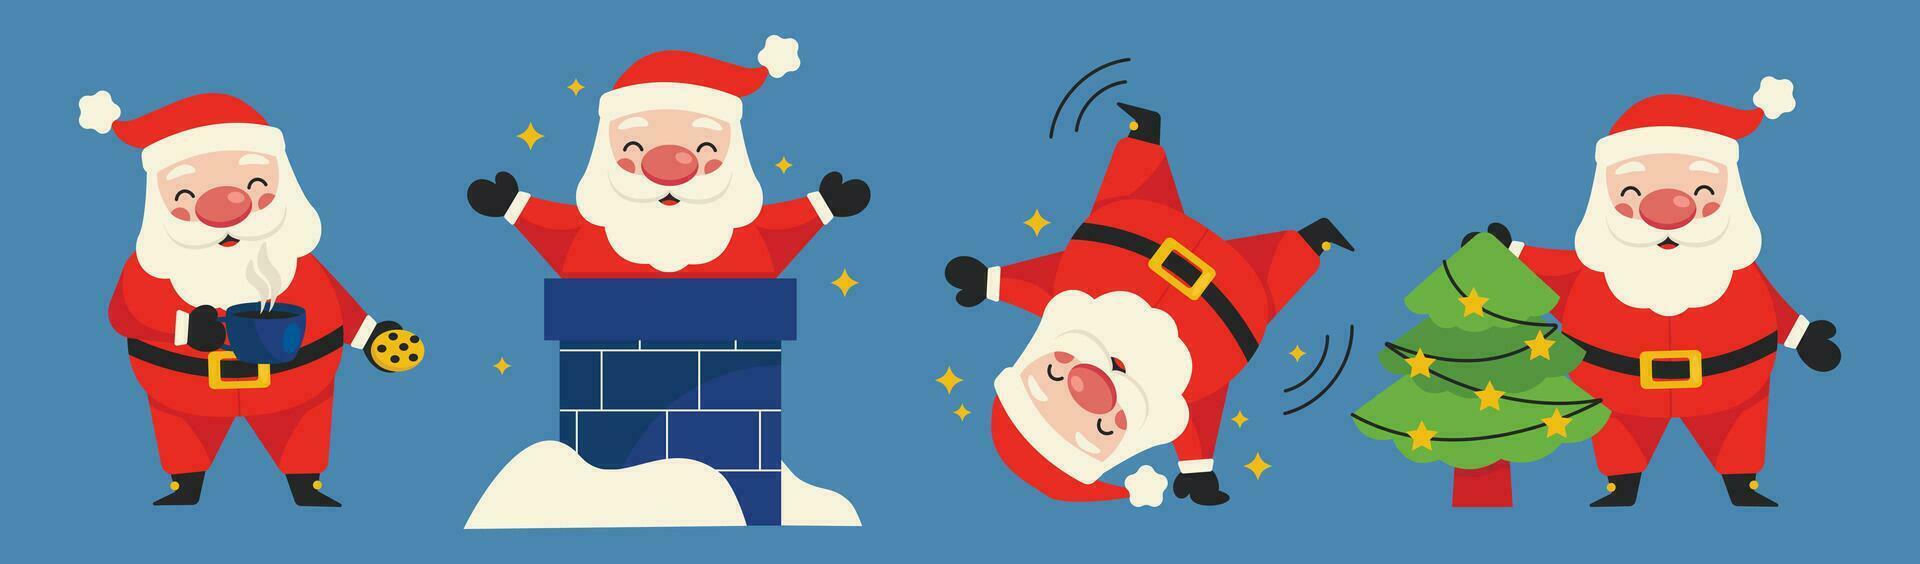 uppsättning av illustrationer med rolig santa claus. santa äter småkakor och drycker kaffe, utseende ut av de skorsten, gör kullerbyttor, och dekorerar de jul träd. vektor grafisk.